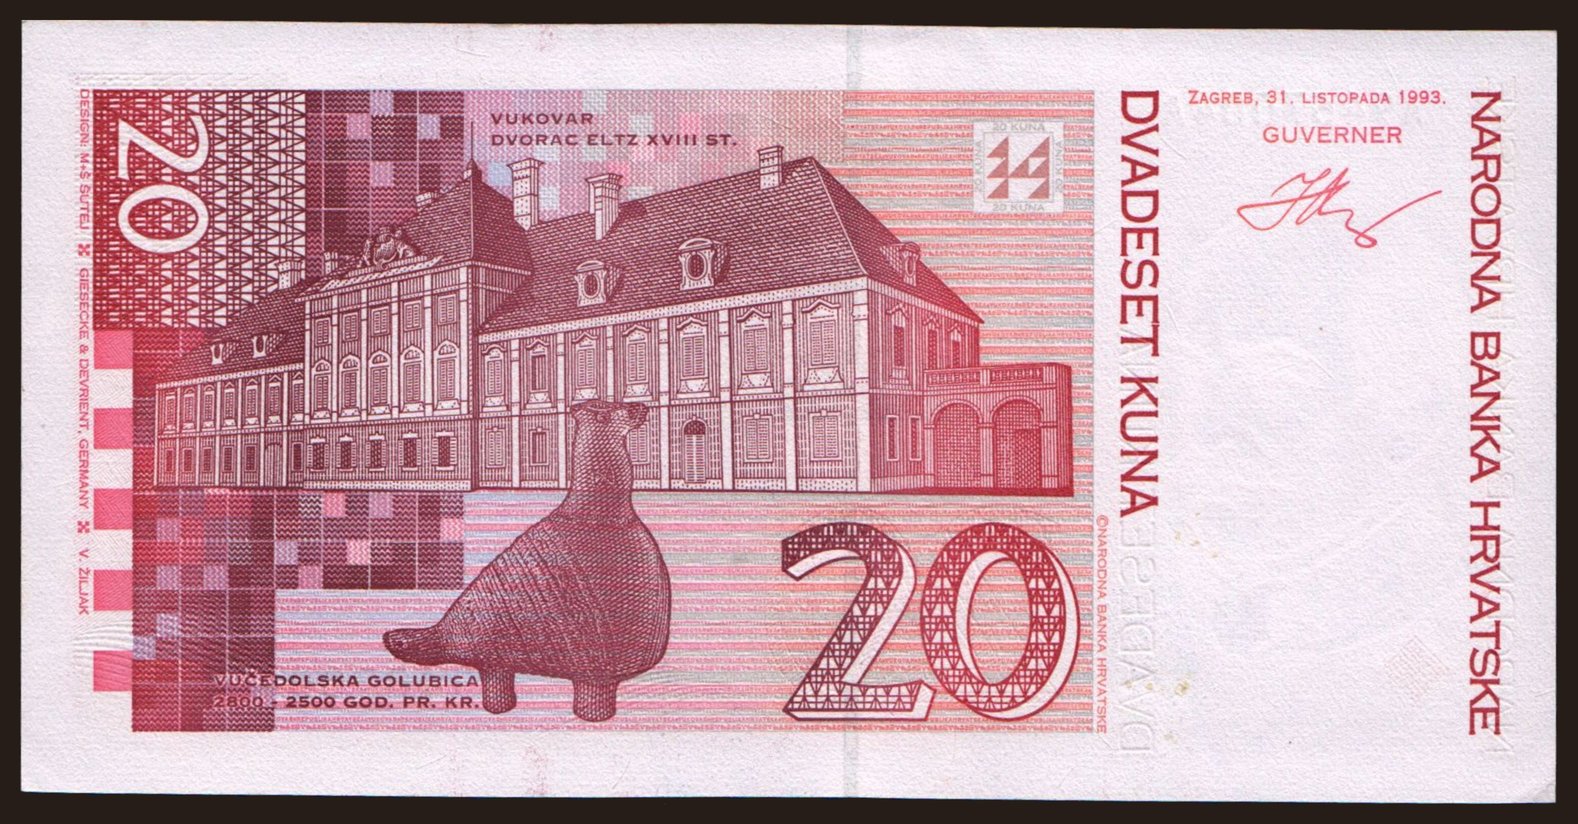 20 kuna, 1993 | notafilia-kp.com